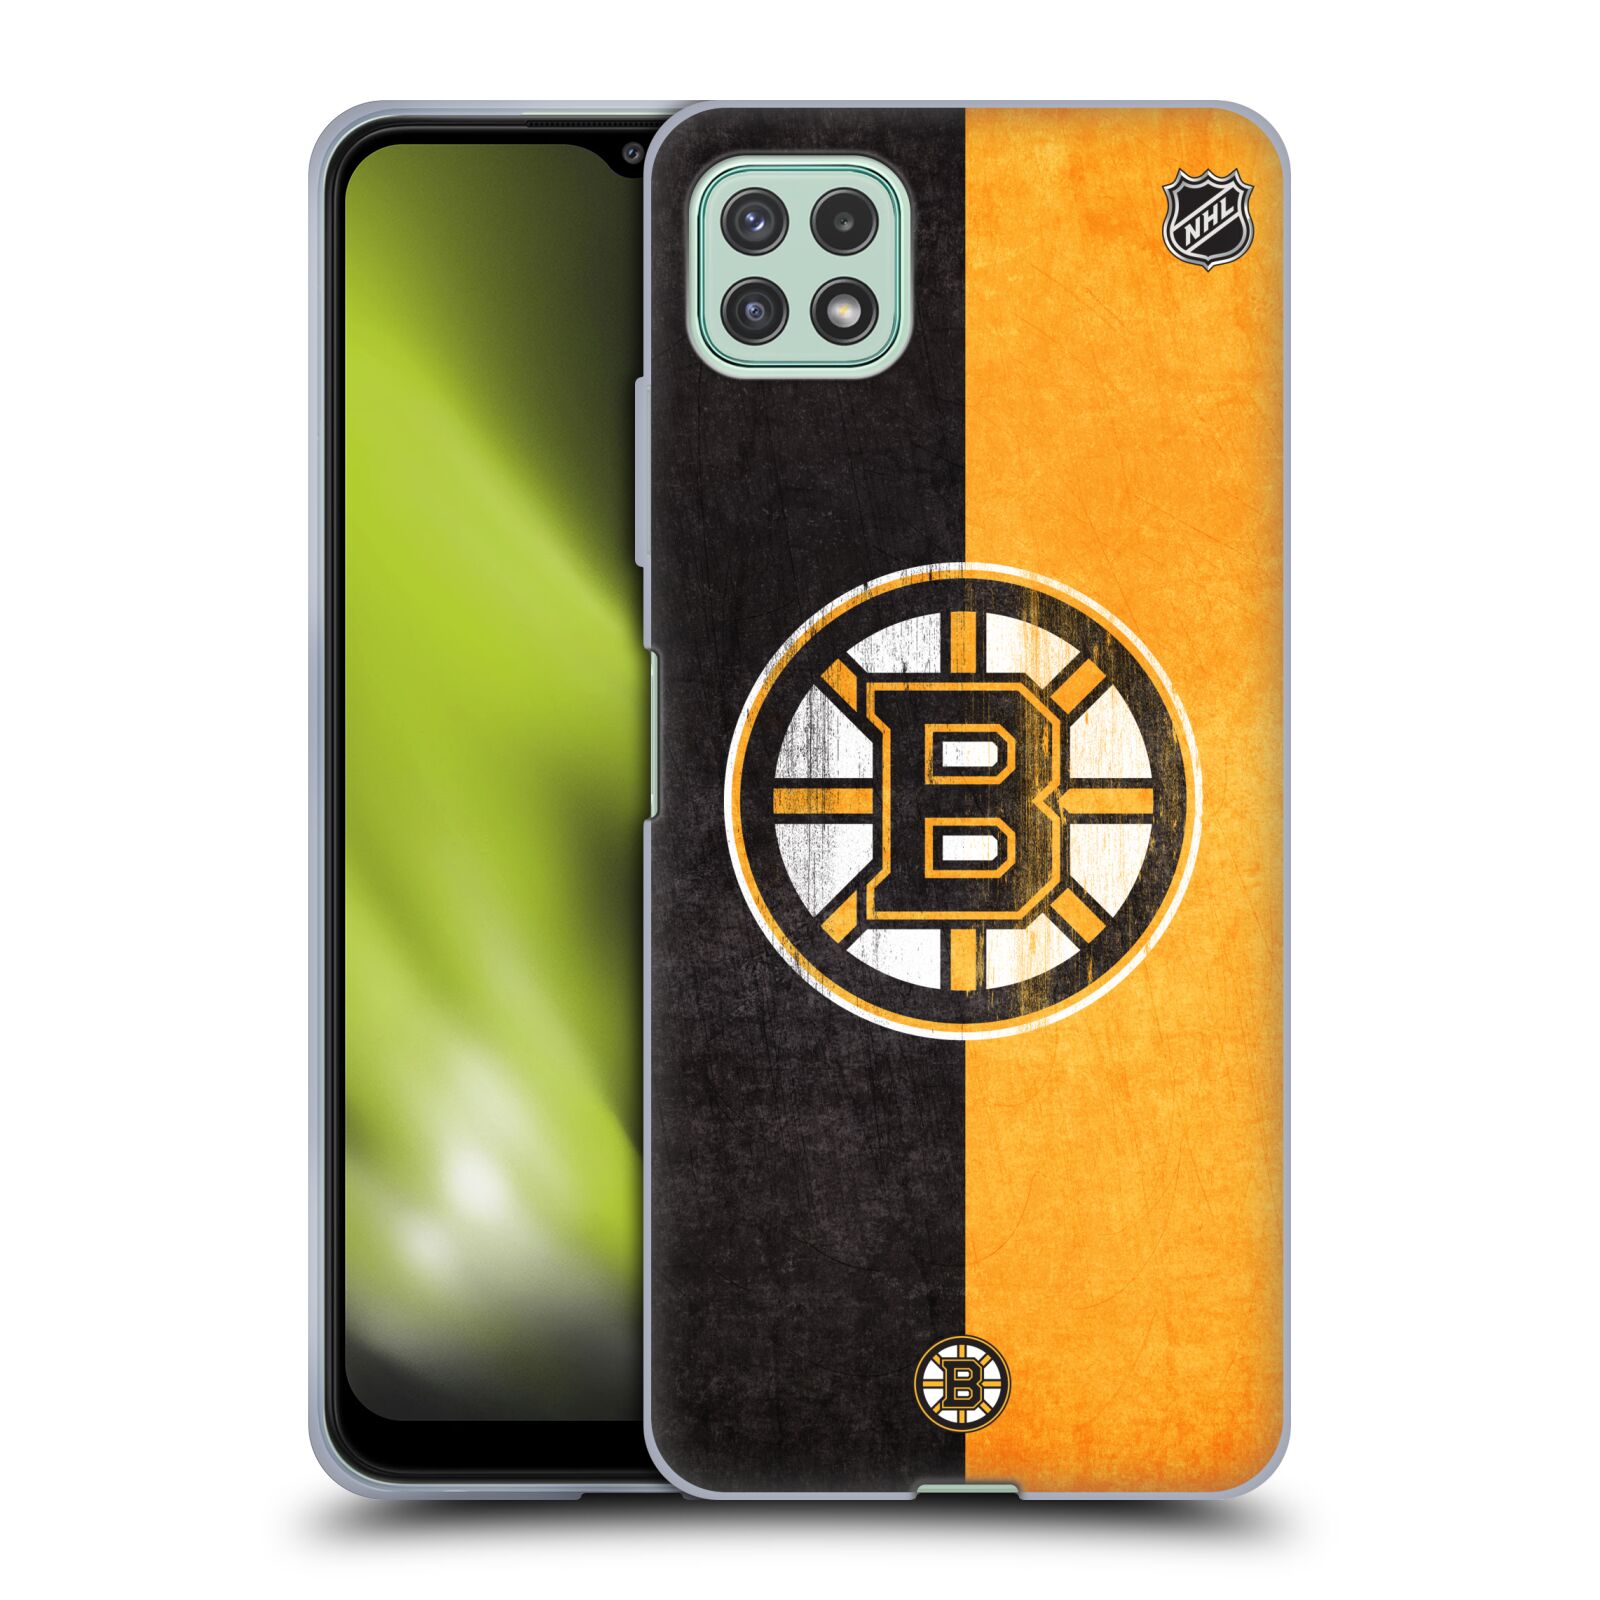 Silikonové pouzdro na mobil Samsung Galaxy A22 5G - NHL - Půlené logo Boston Bruins (Silikonový kryt, obal, pouzdro na mobilní telefon Samsung Galaxy A22 5G s licencovaným motivem NHL - Půlené logo Boston Bruins)